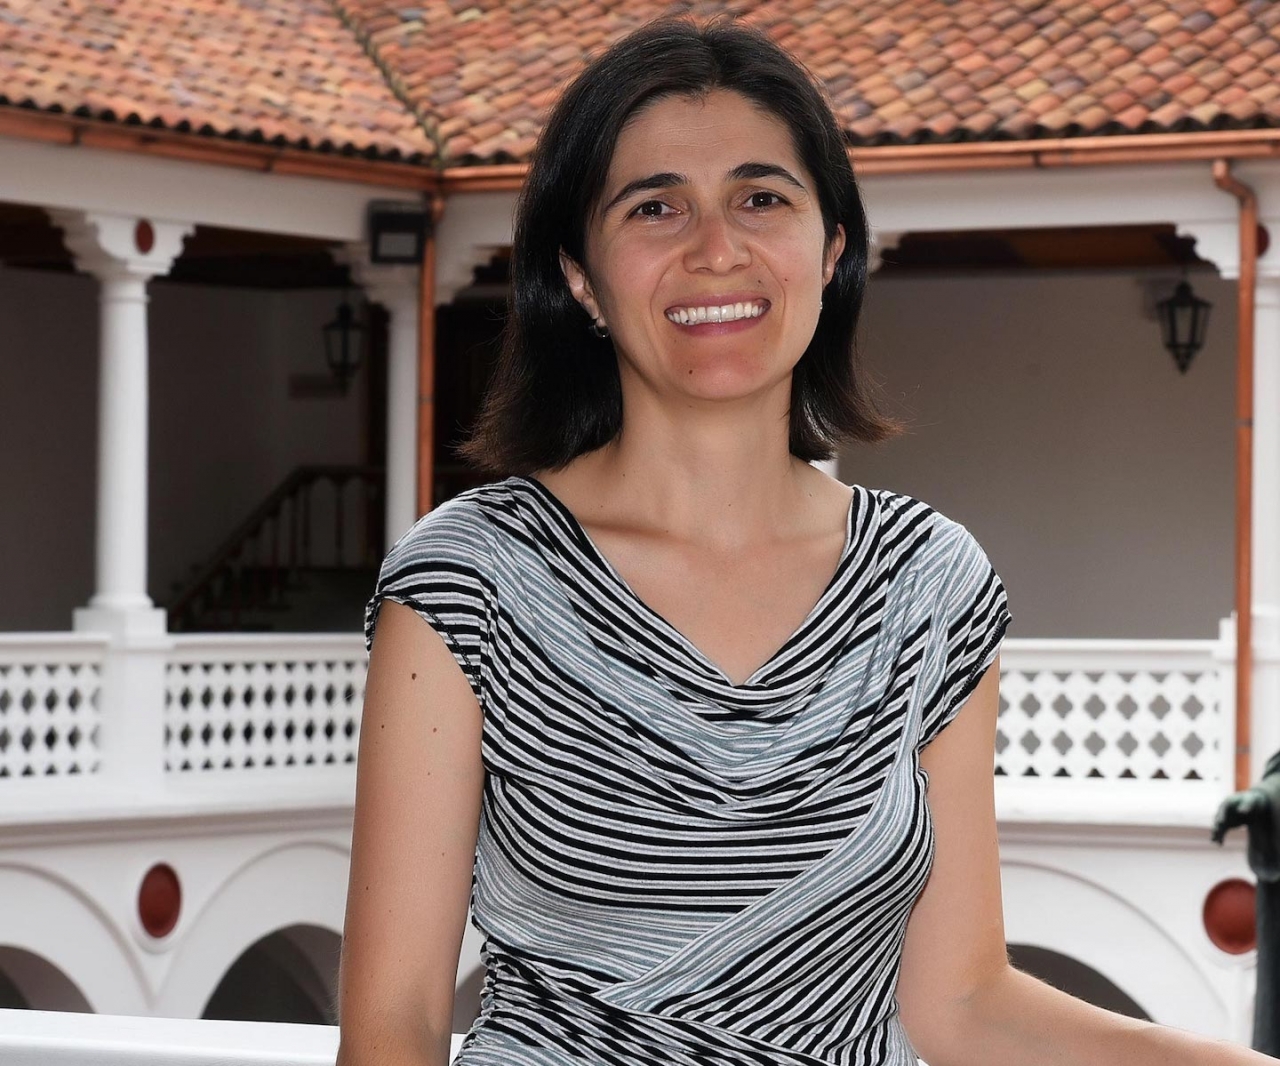 La profesora rosarista, Sandra Botero, desmenuza algunos de los debates más imbricados relacionados con la violencia actual en Colombia|||